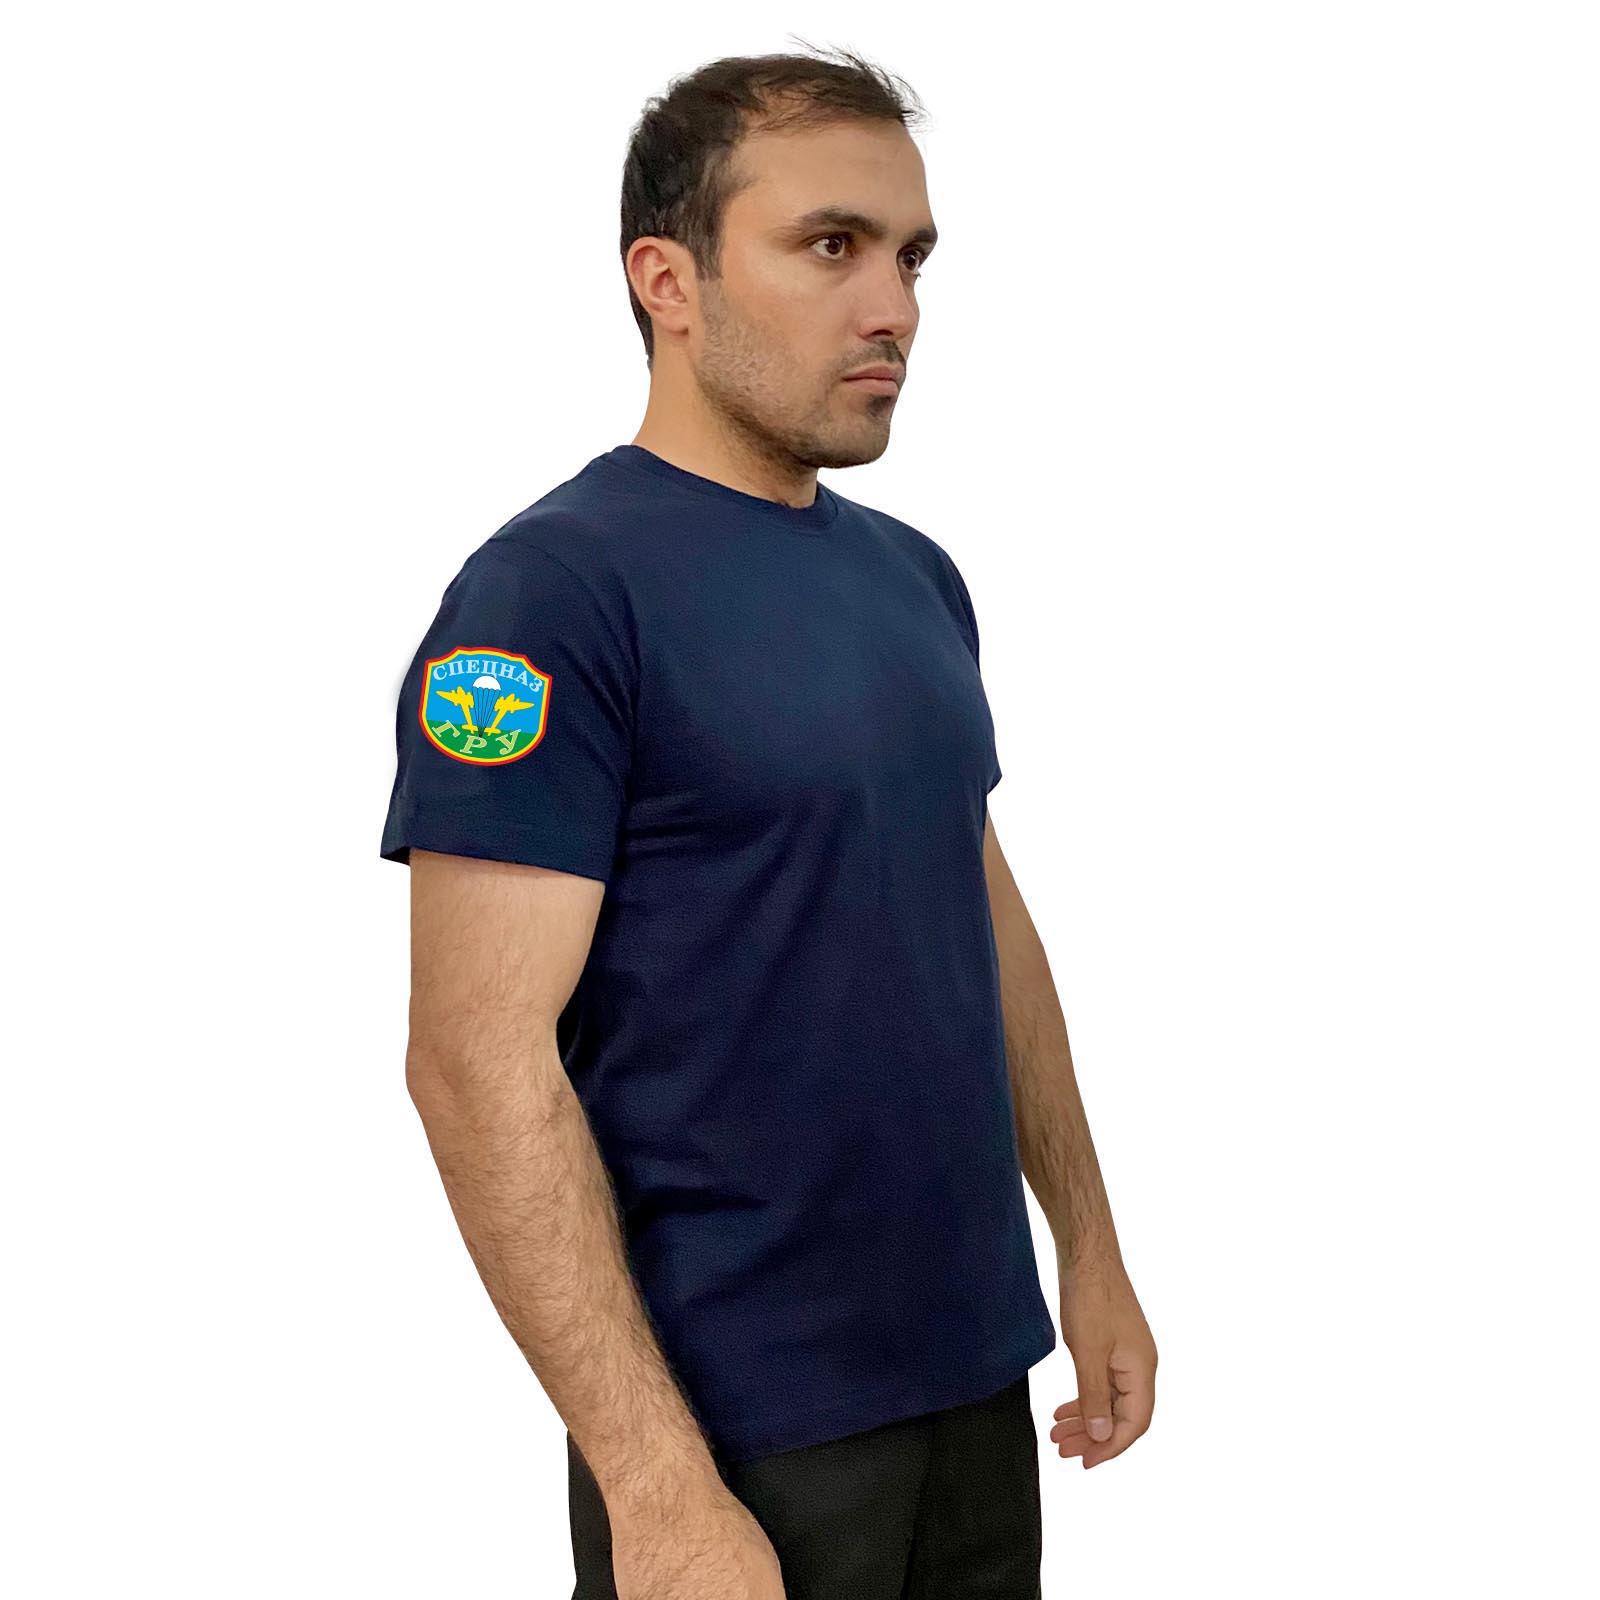 Тёмно-синяя футболка с термотрансфером "Спецназ ГРУ" на рукаве